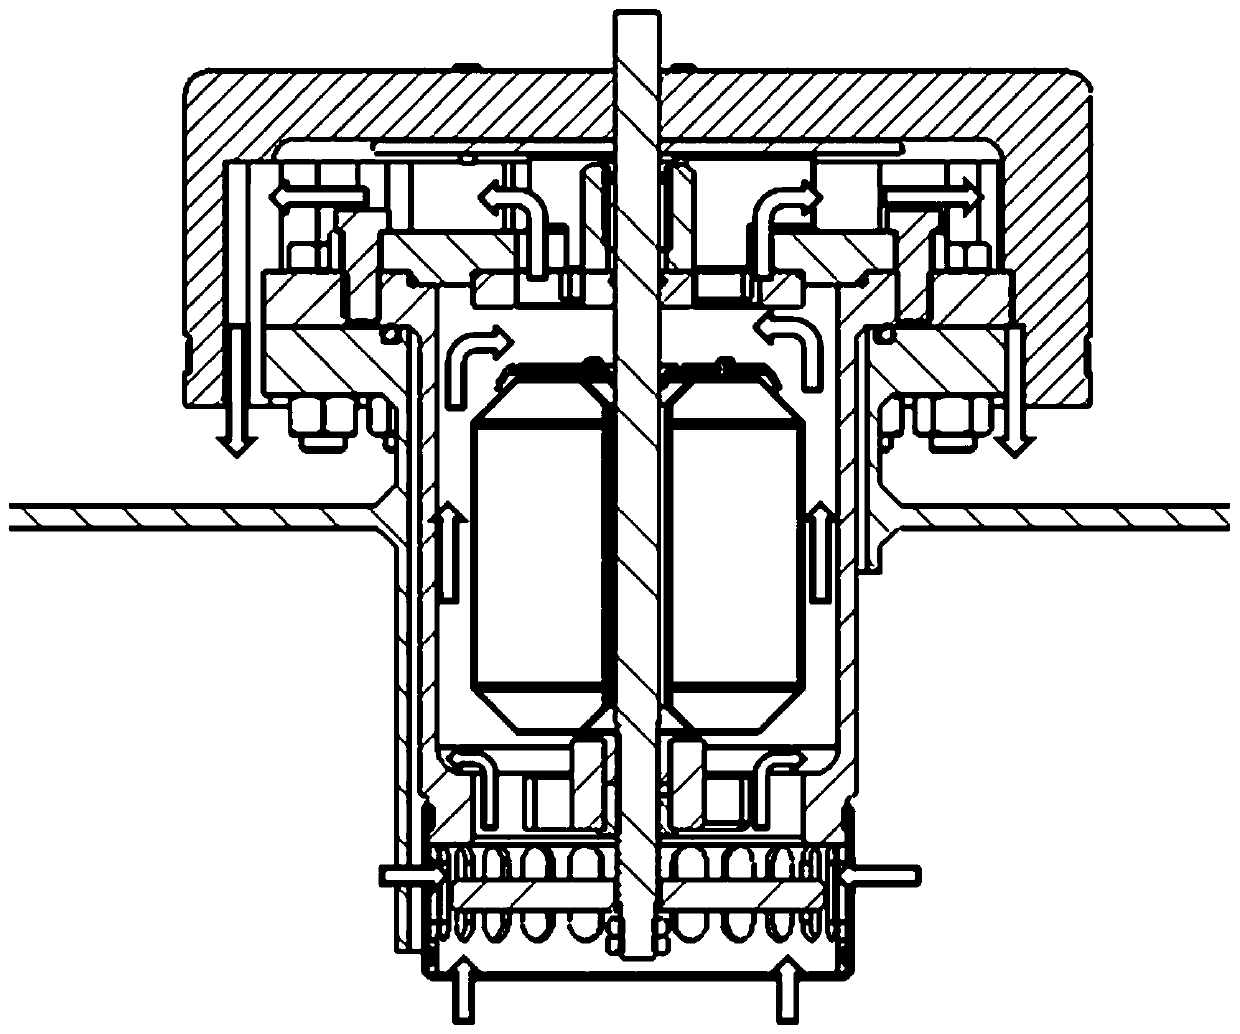 Anti-freezing exhaust valve